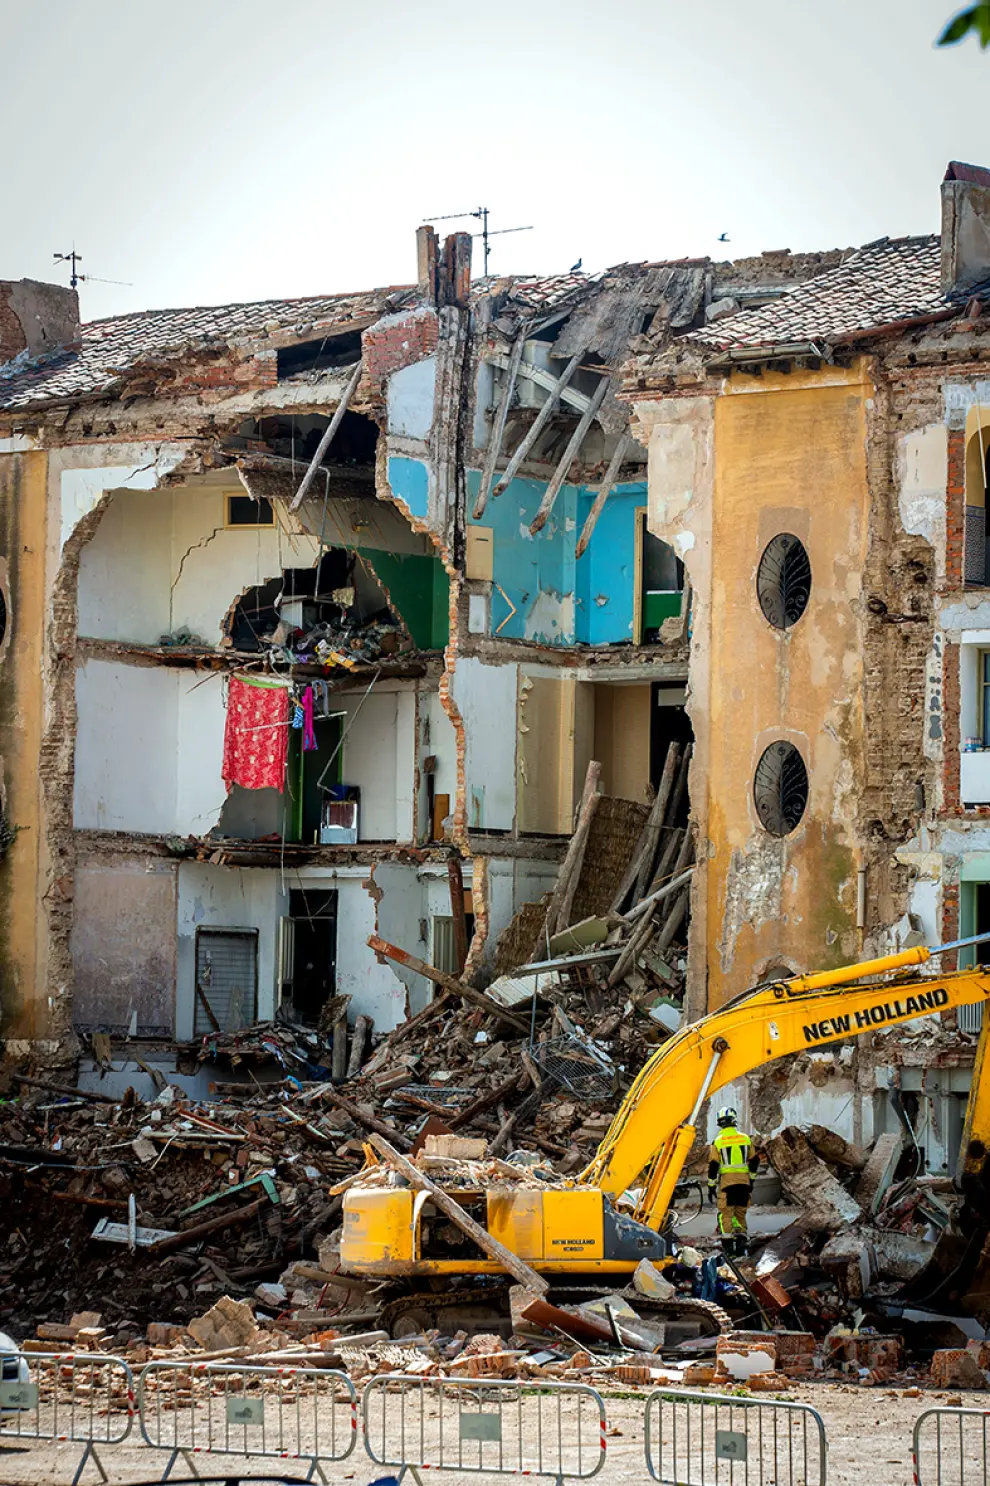 Foto del edificio en ruinas en Calatayud, donde ha muerto un hombre al derribarse la vivienda